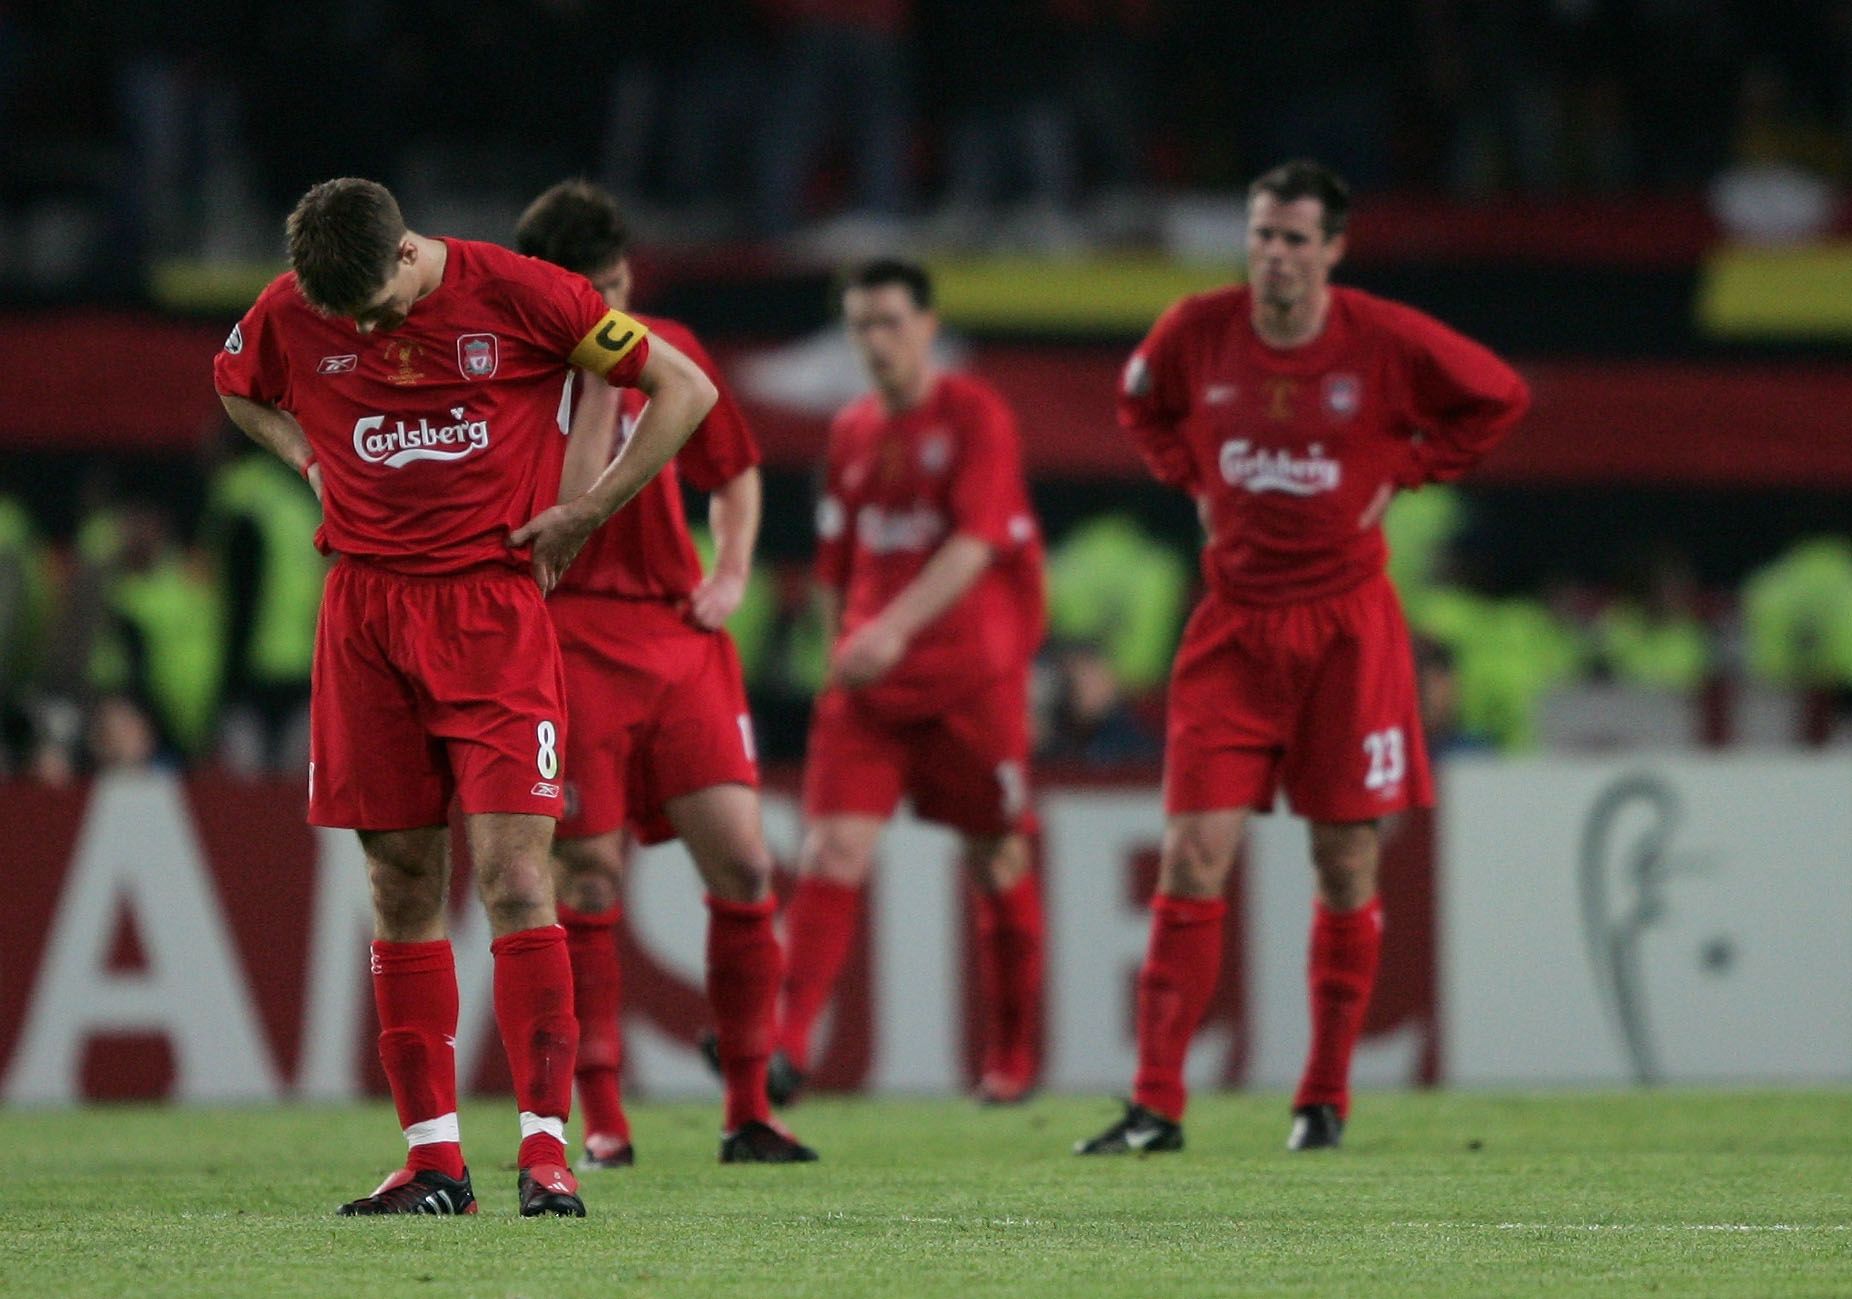 Steven Gerrard half-time speech in the 2005 Champions League final was something else | SportsJOE.ie